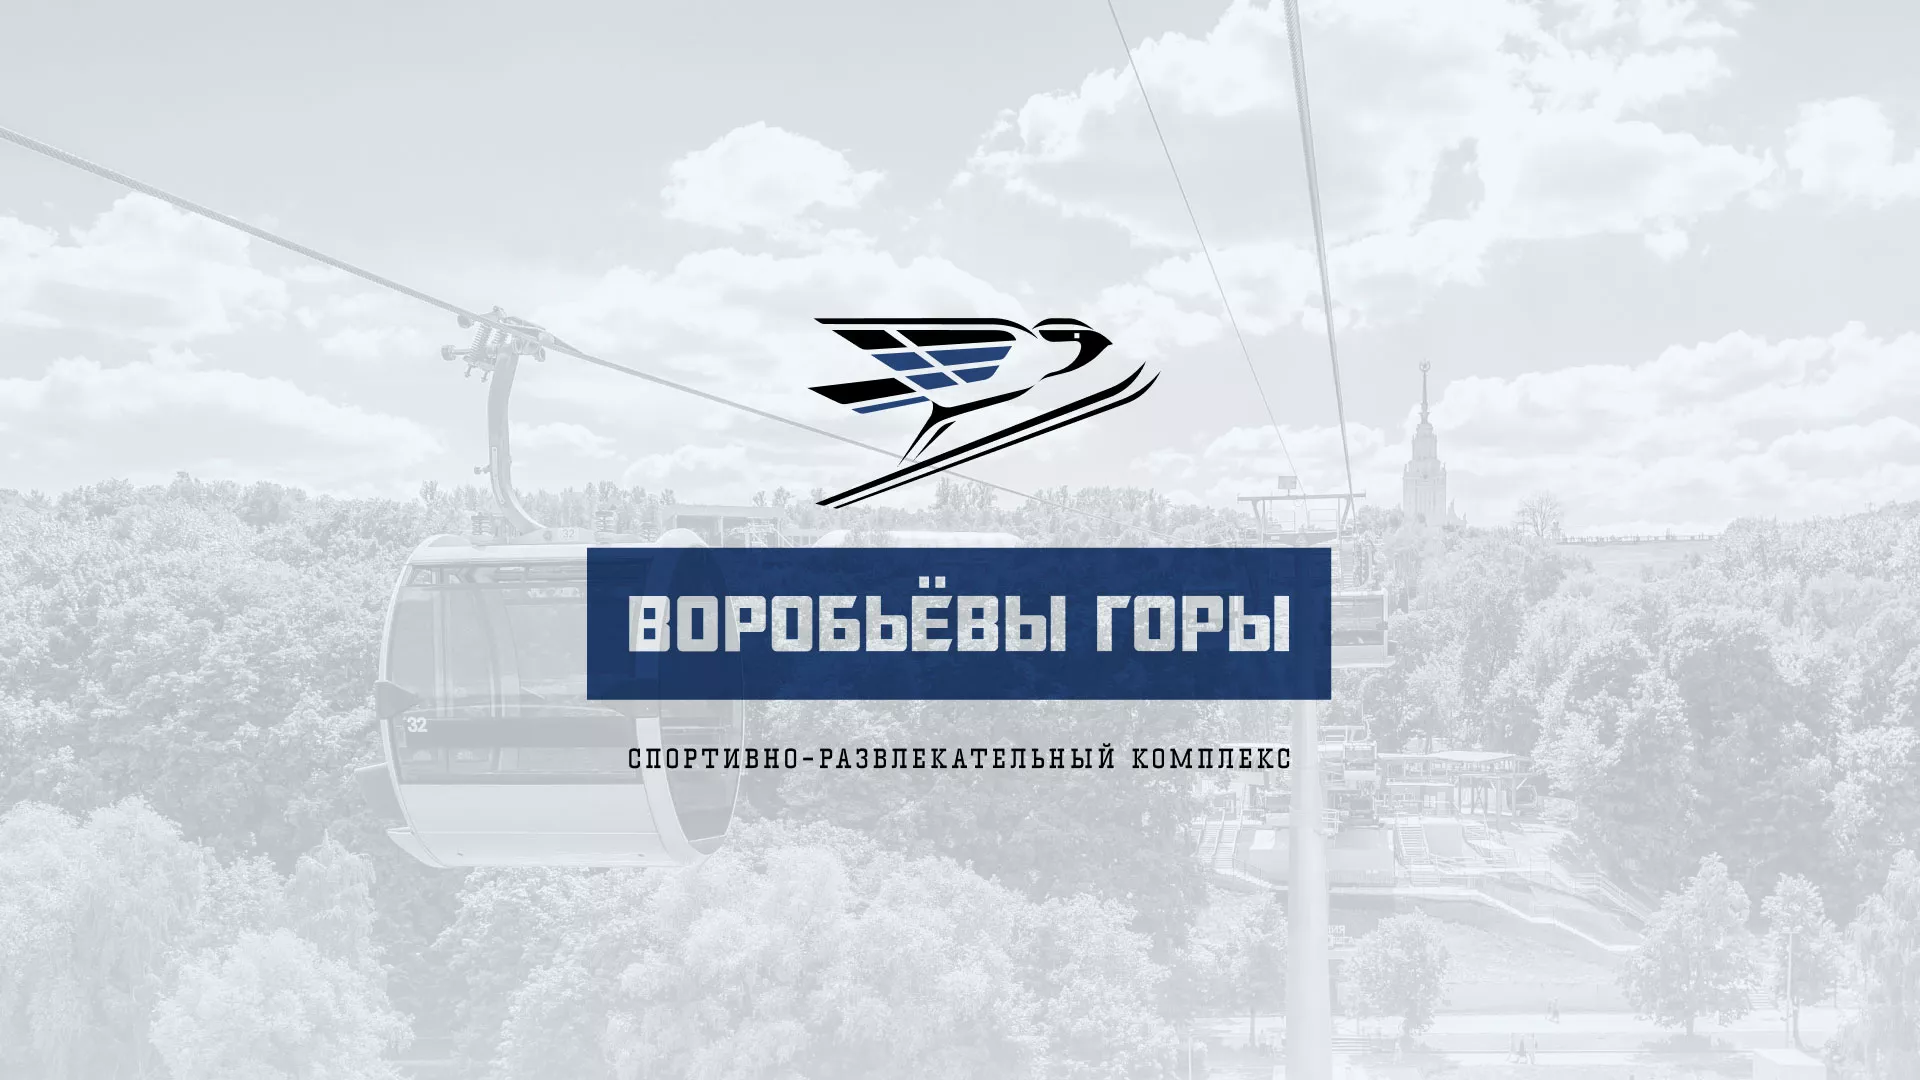 Разработка сайта в Мценске для спортивно-развлекательного комплекса «Воробьёвы горы»